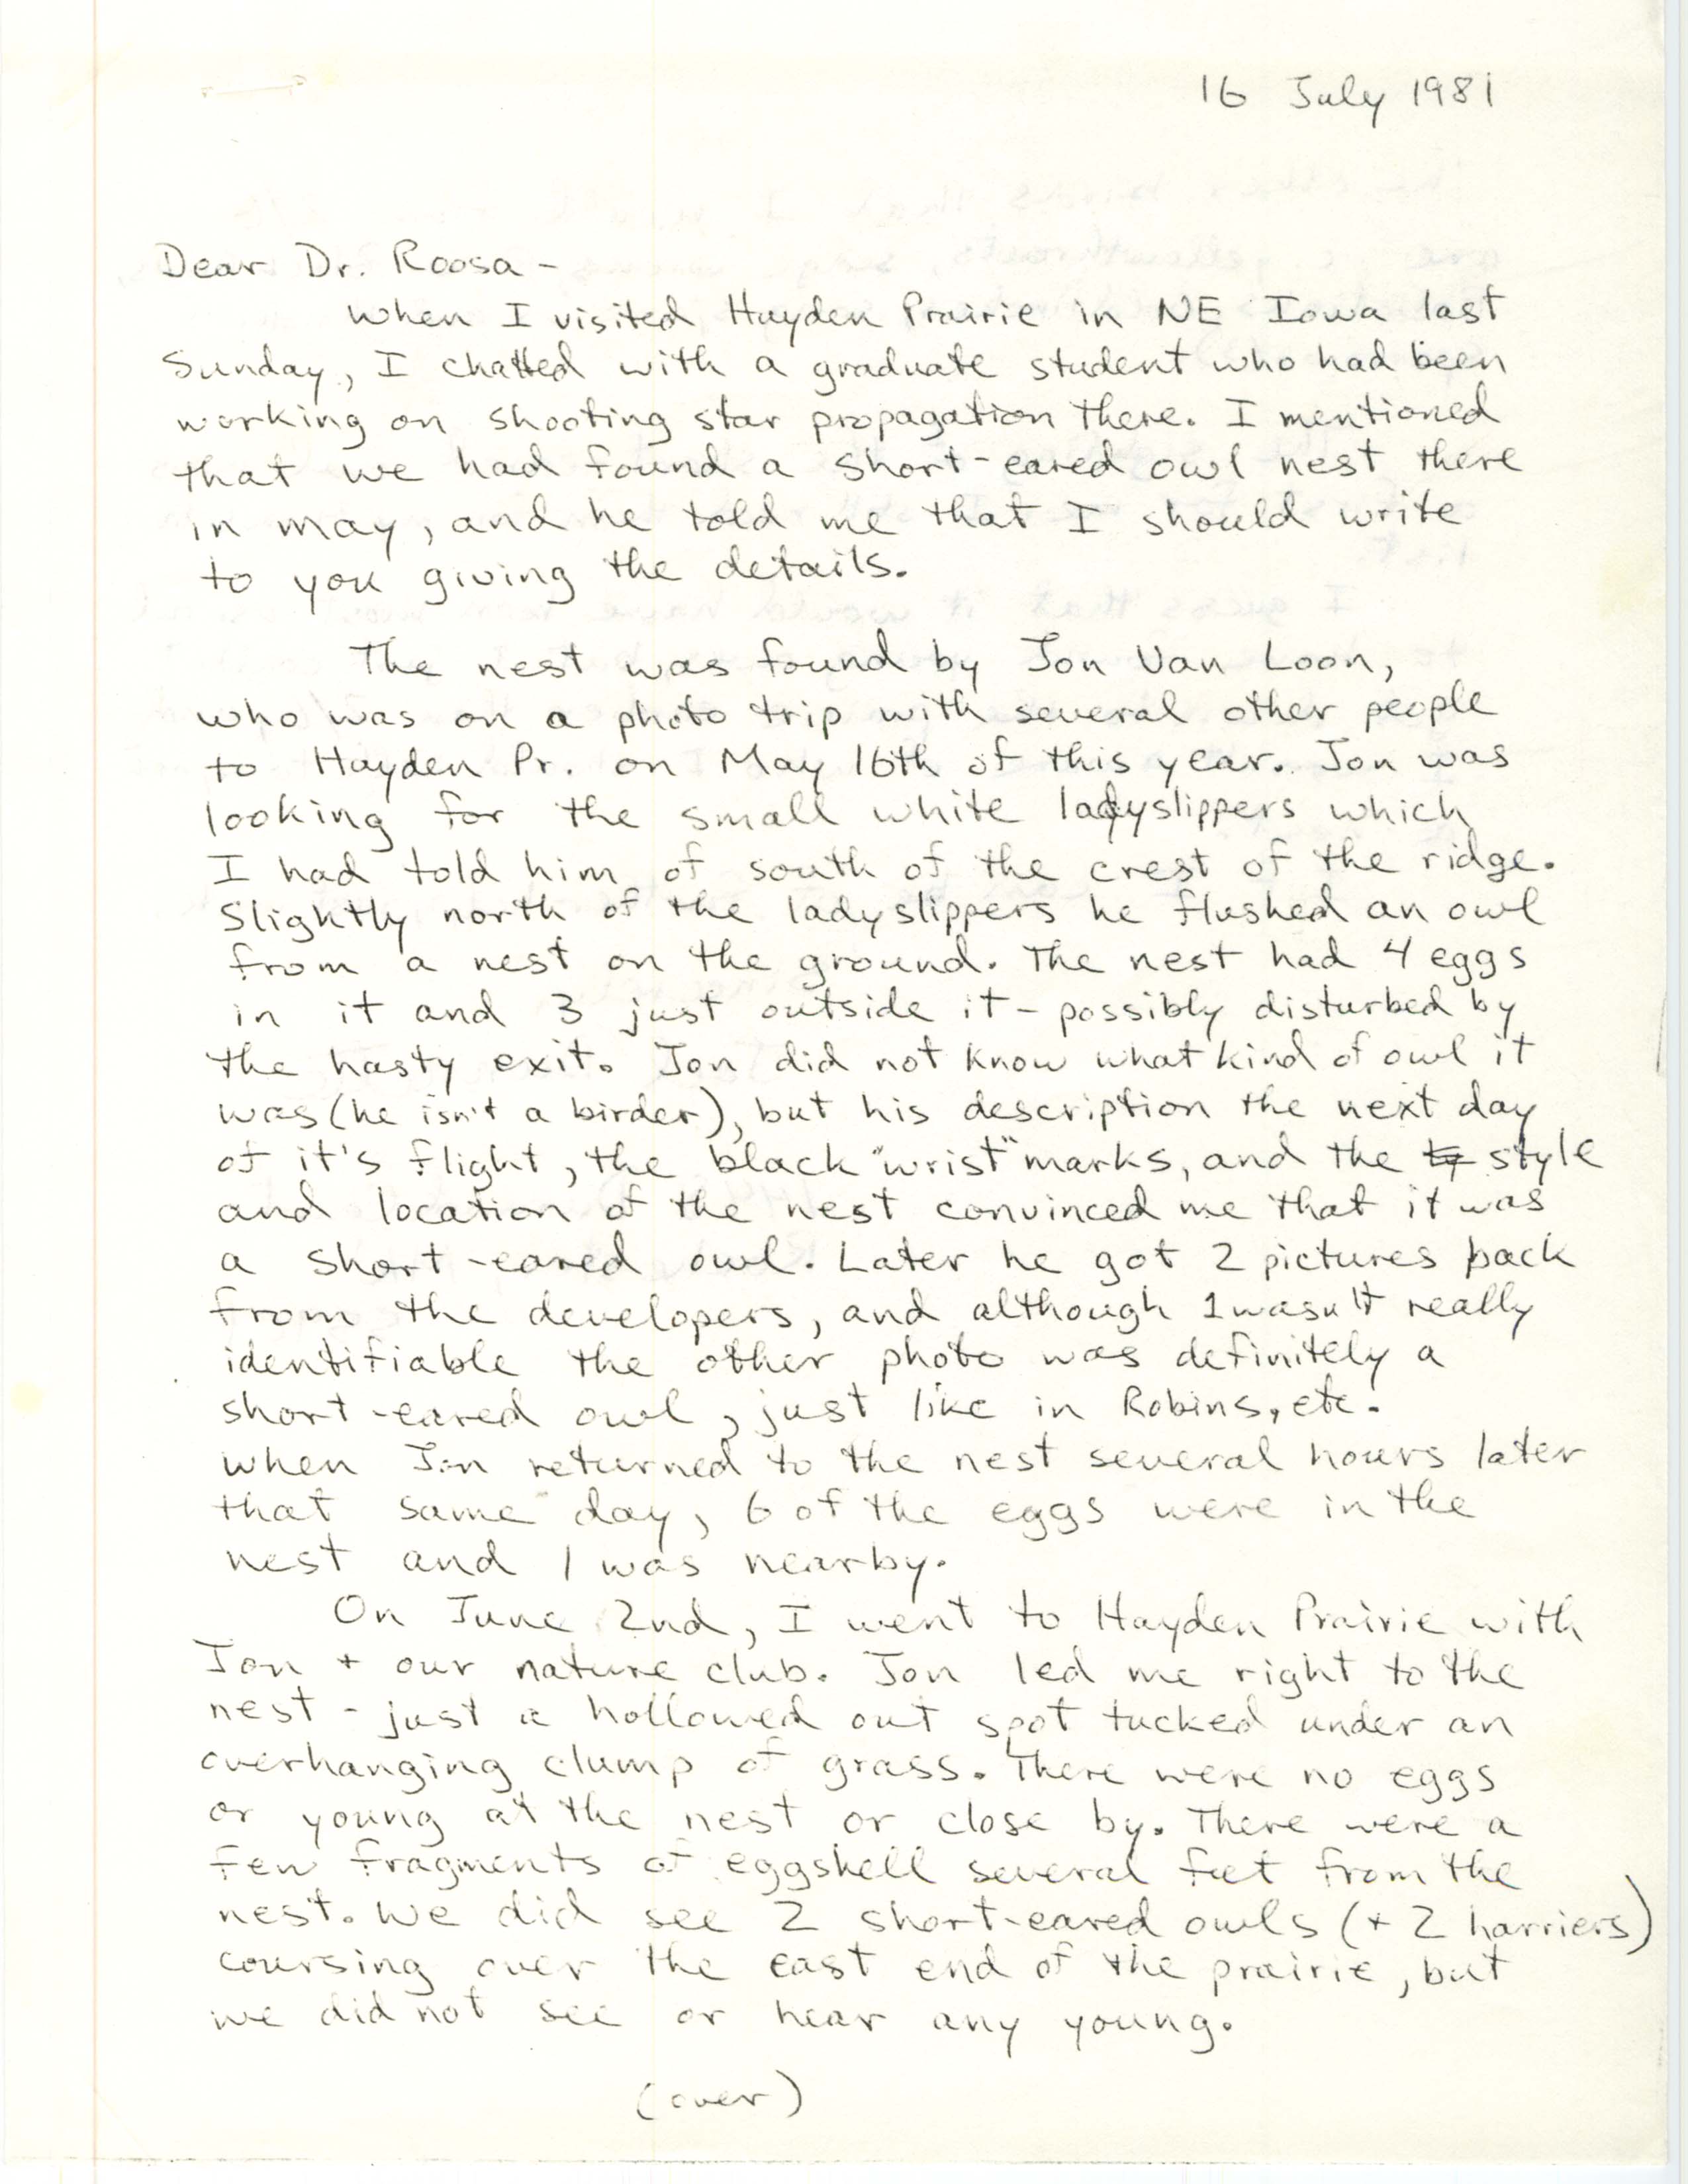 Joel Dunnette letter to Dean Roosa regarding a Short-eared Owl sighting, July 16, 1981